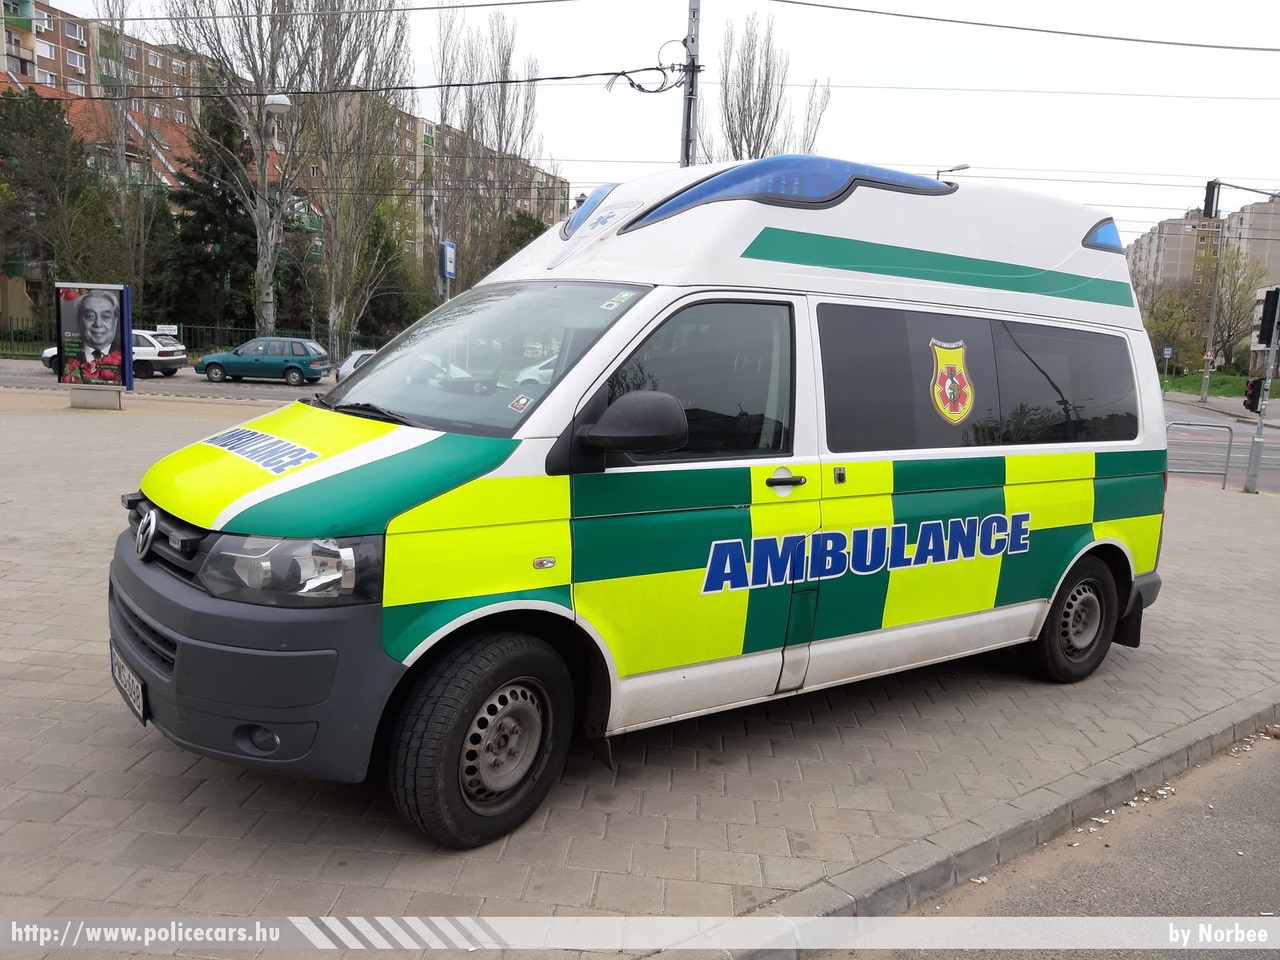 Volkswagen Transporter T5 facelift, International Ambulance Service Kft., fotó: Norbee
Keywords: mentő mentőautó magyar Magyarország hungarian Hungary ambulance PMS-698